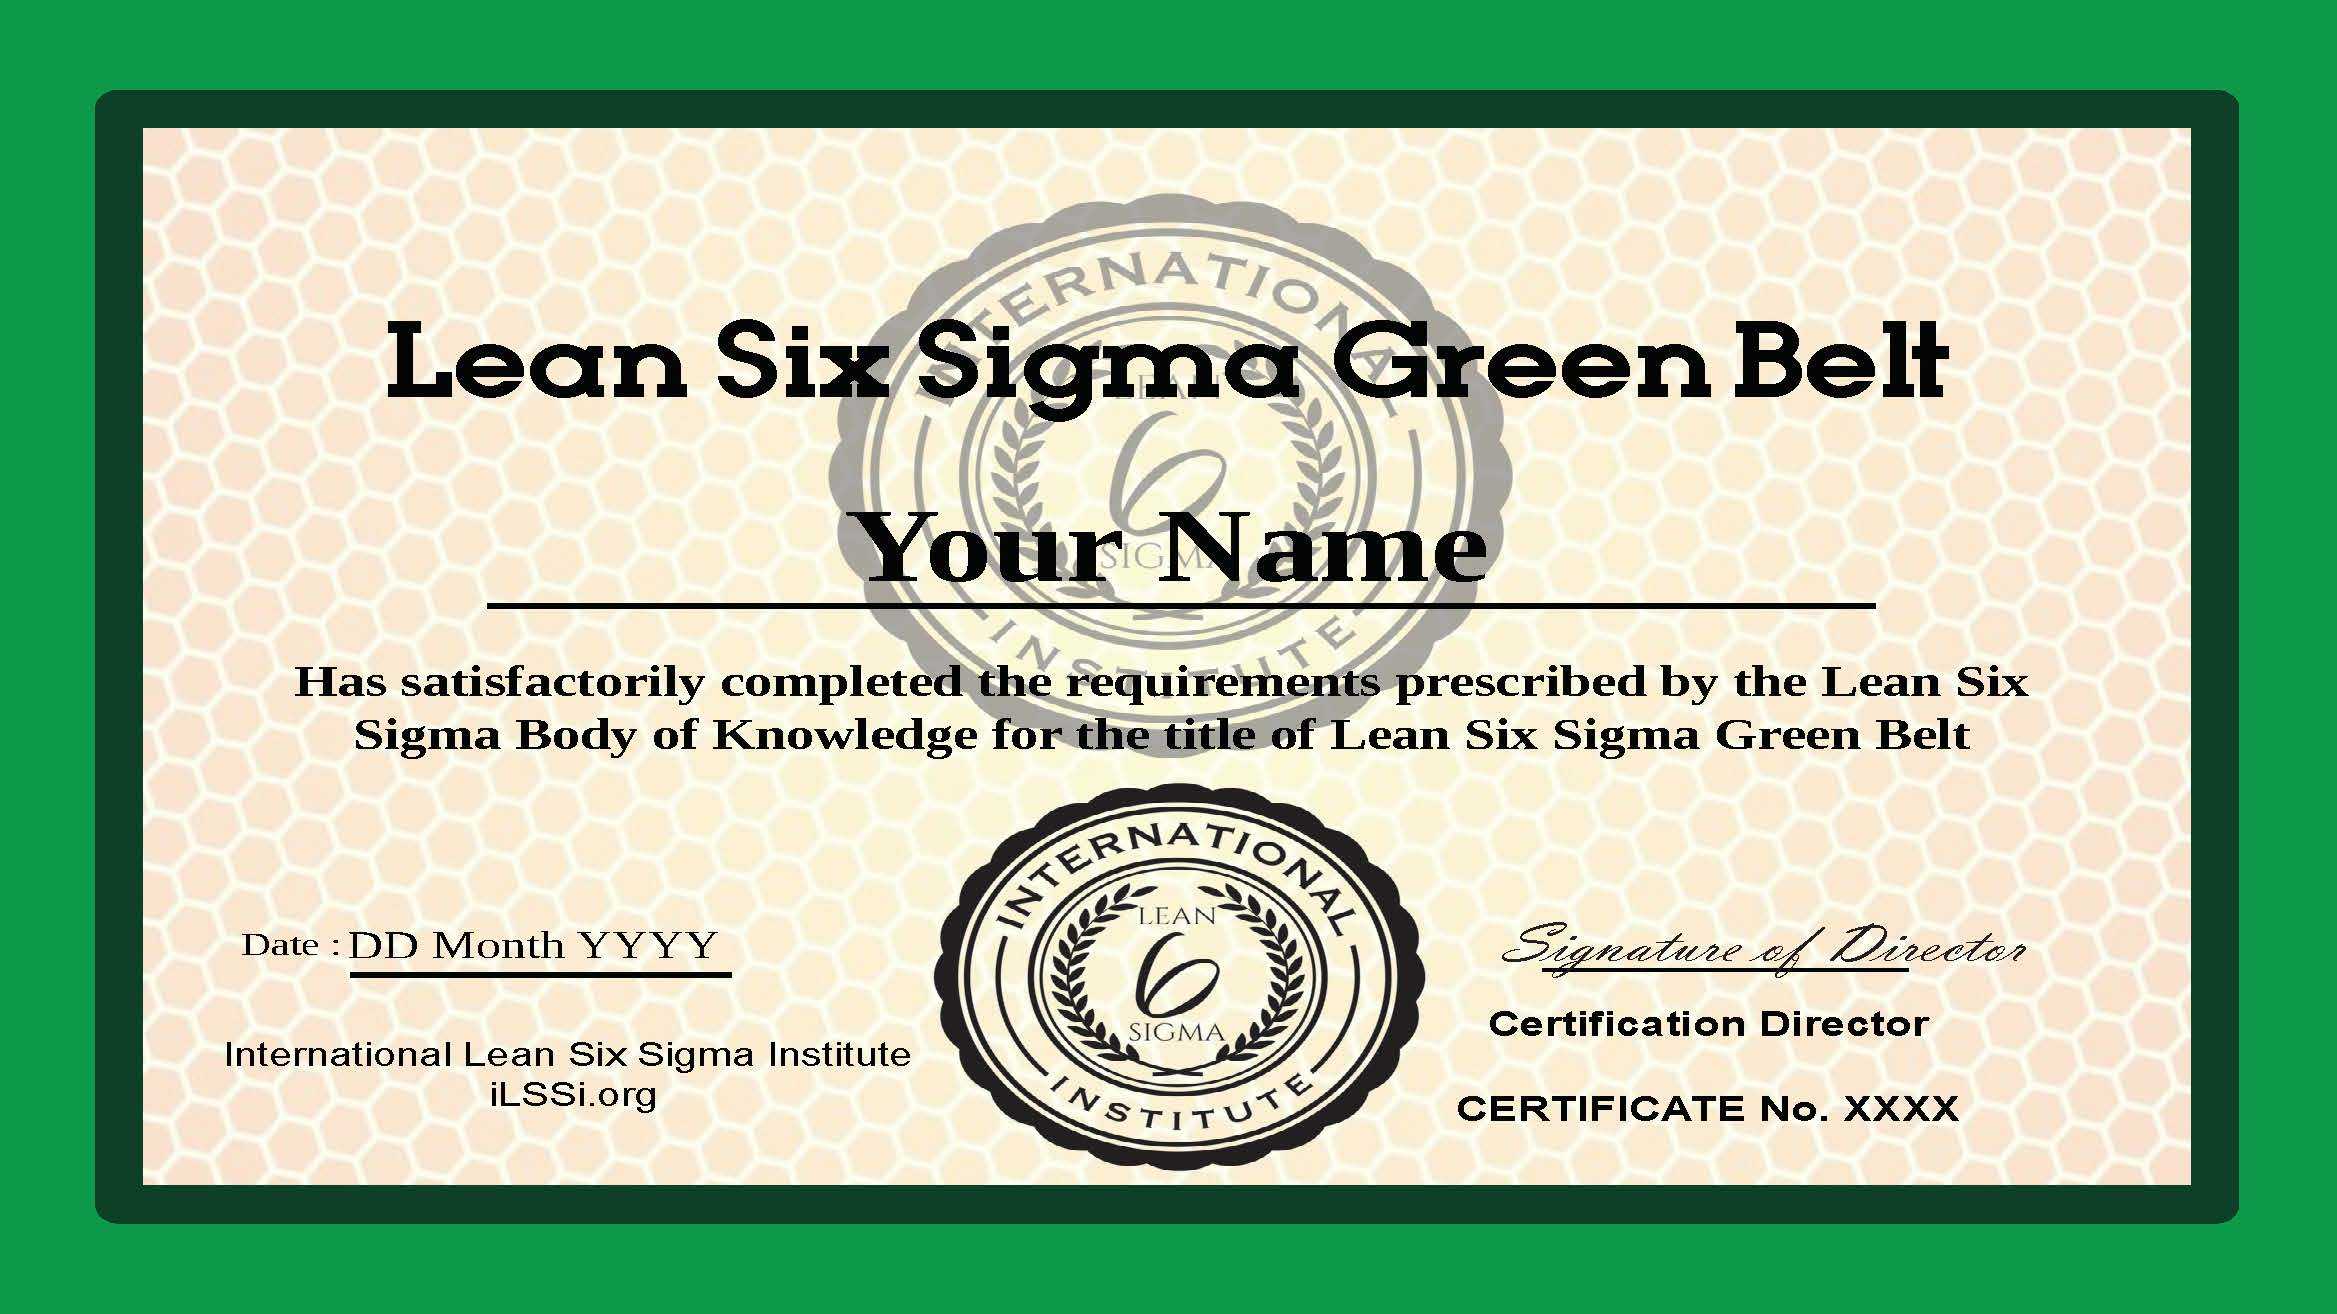 Ilssi Green Belt Oct 2019 Template With Green Belt Certificate Template